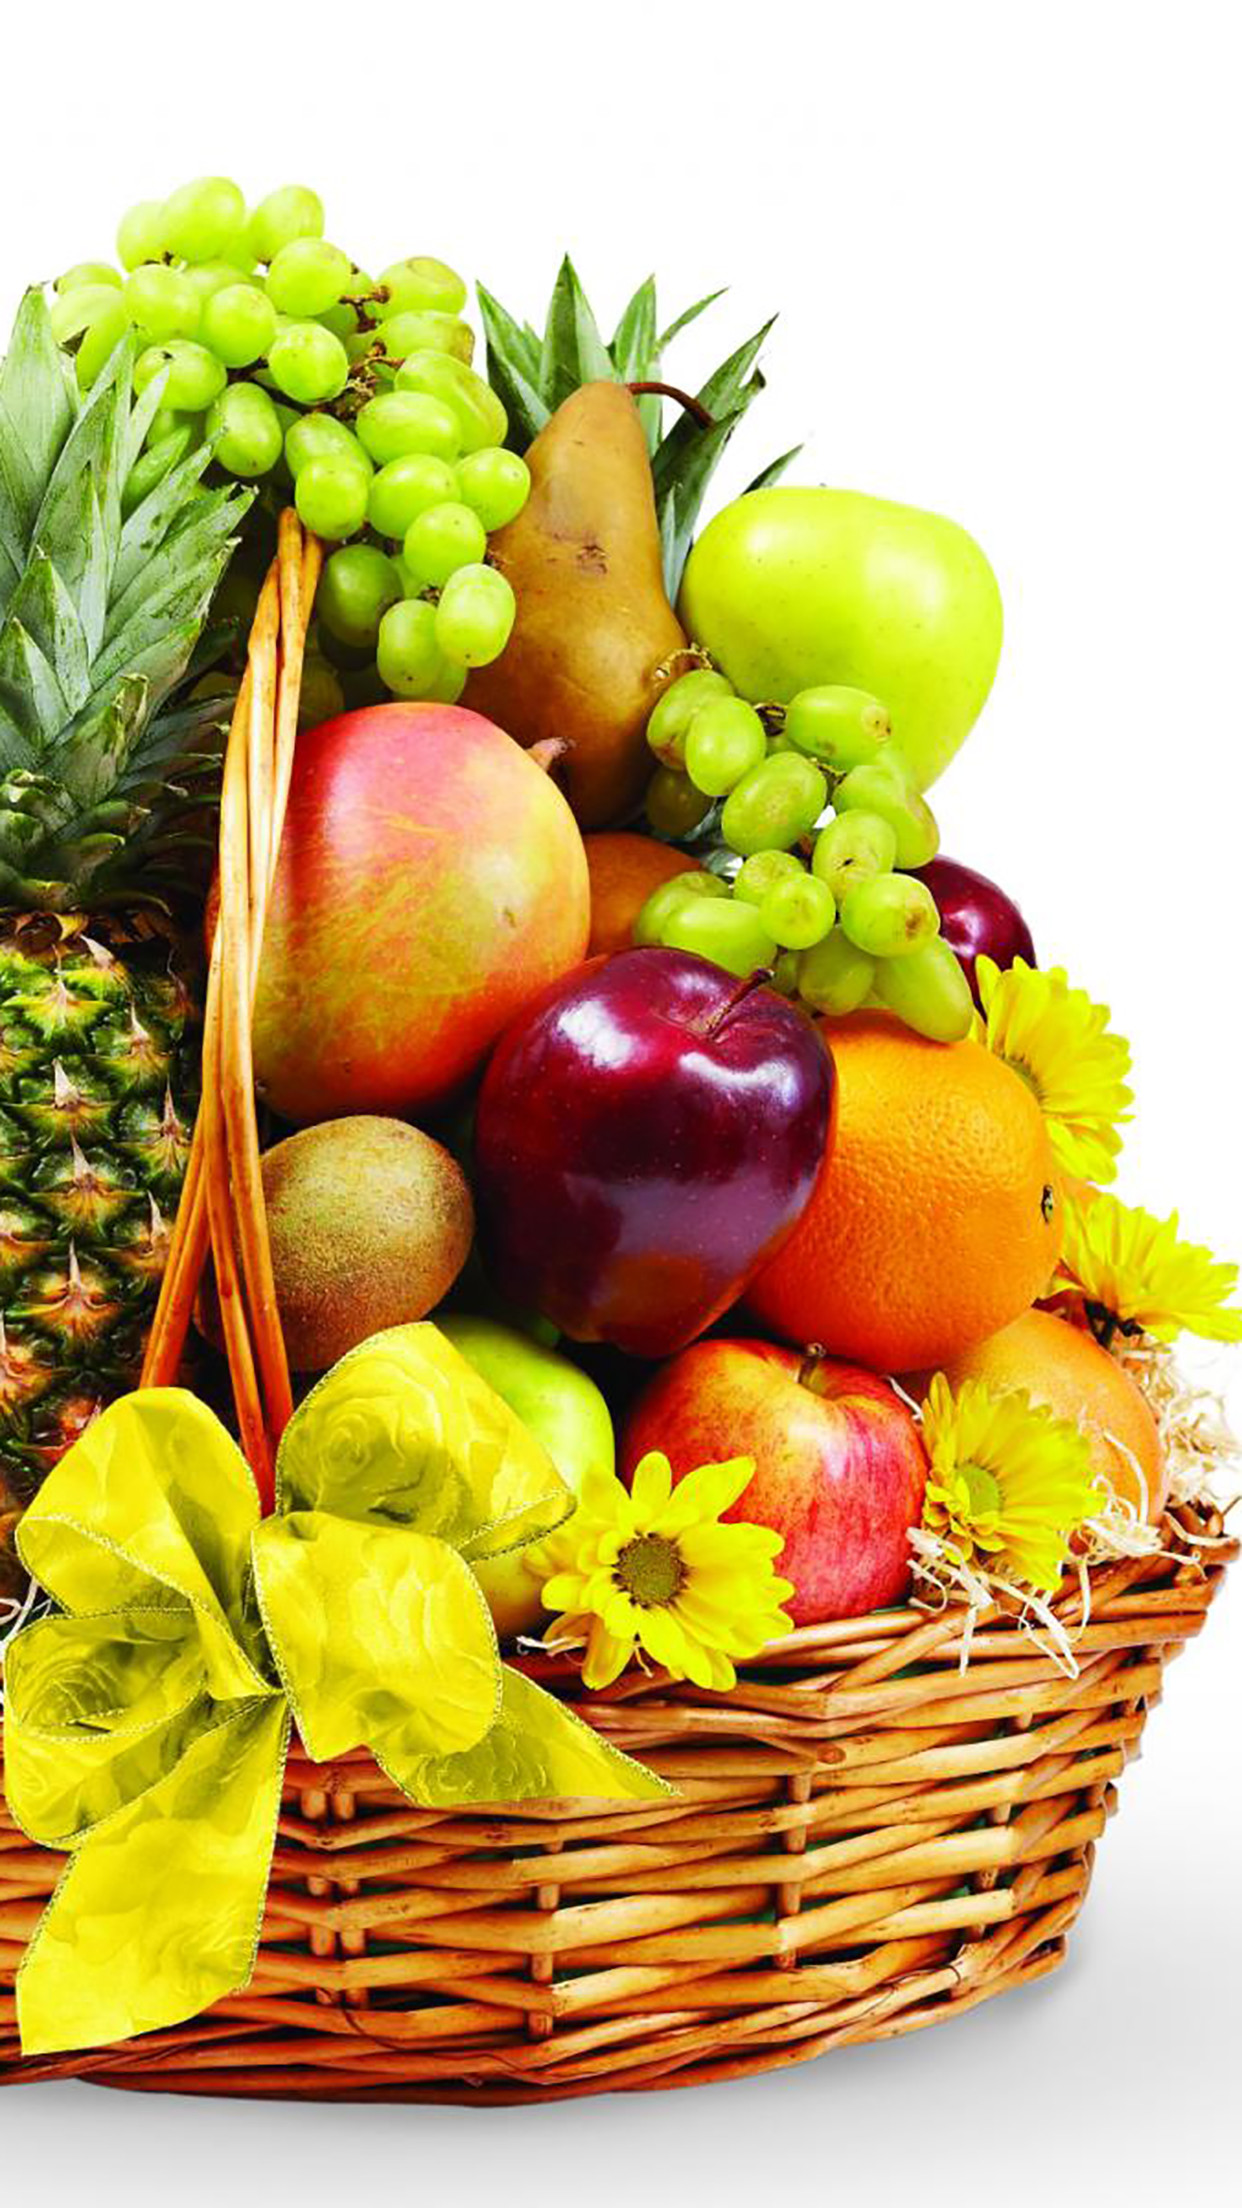 フルーツ壁紙hd,自然食品,ホールフード,地元の食べ物,食物,フルーツ